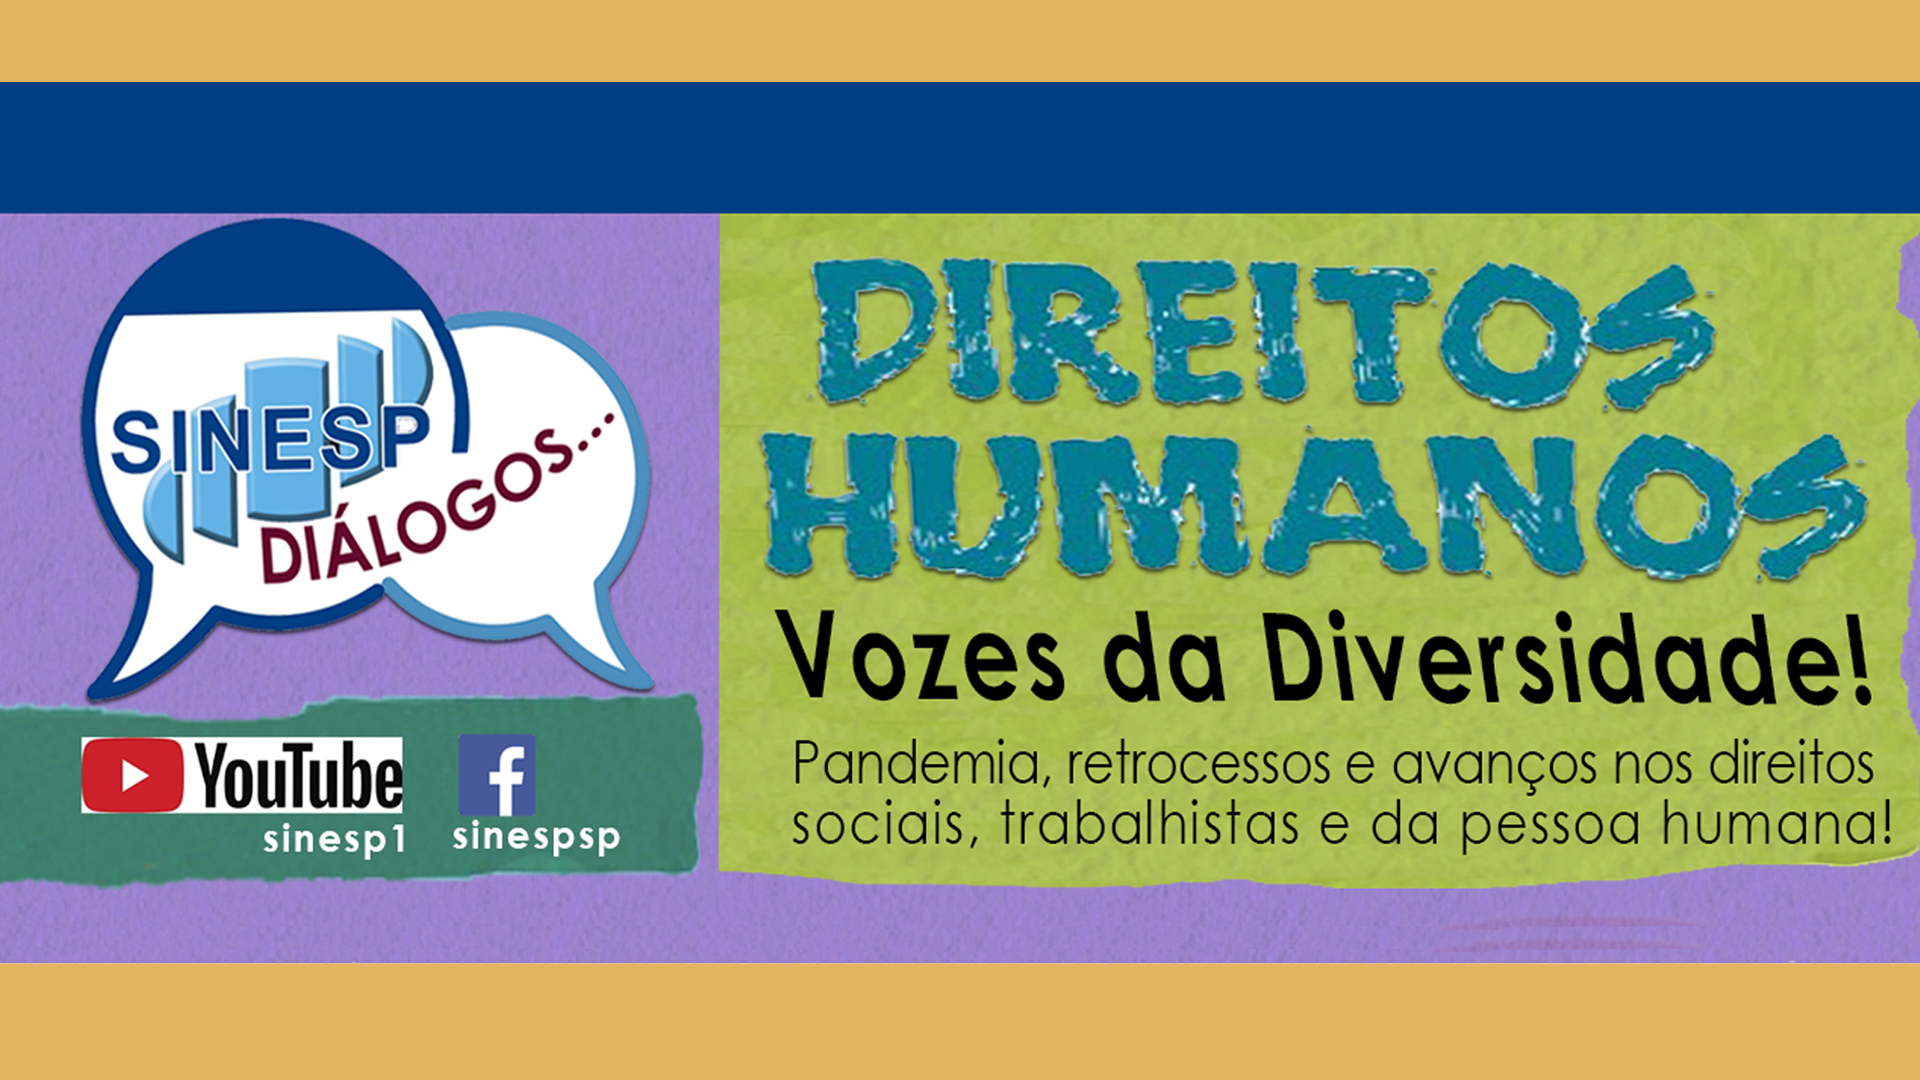 LIVE: Direitos Humanos - Vozes da Diversidade!